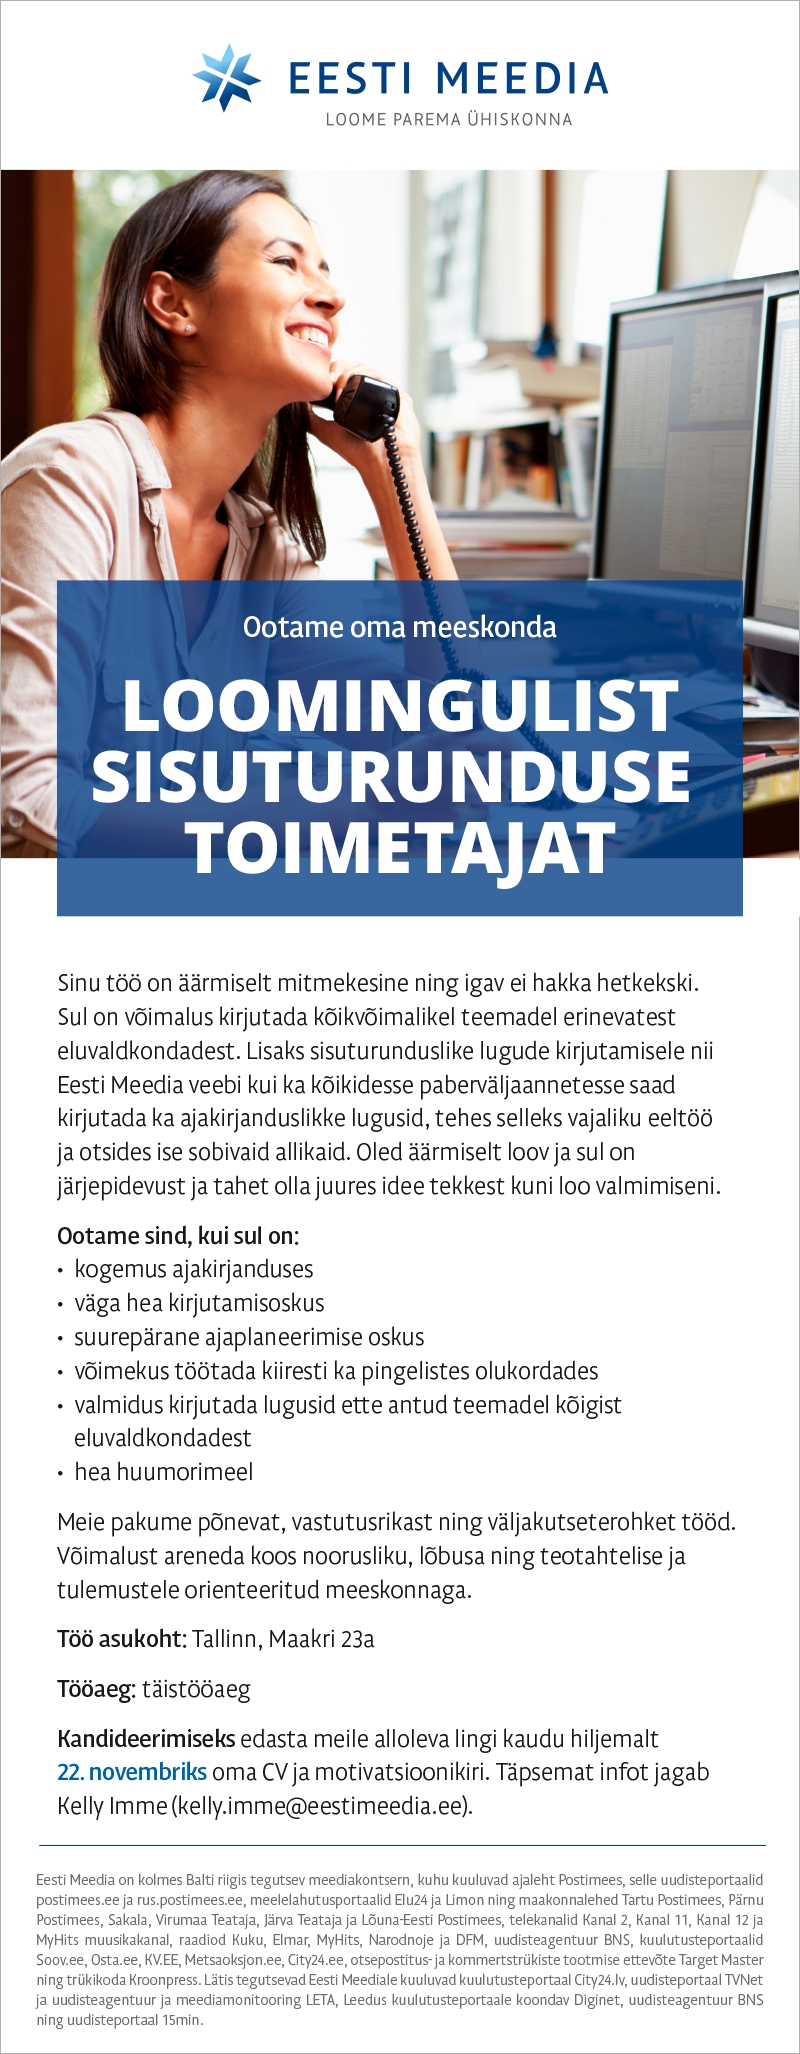 Eesti Meedia Sisuturunduse toimetaja